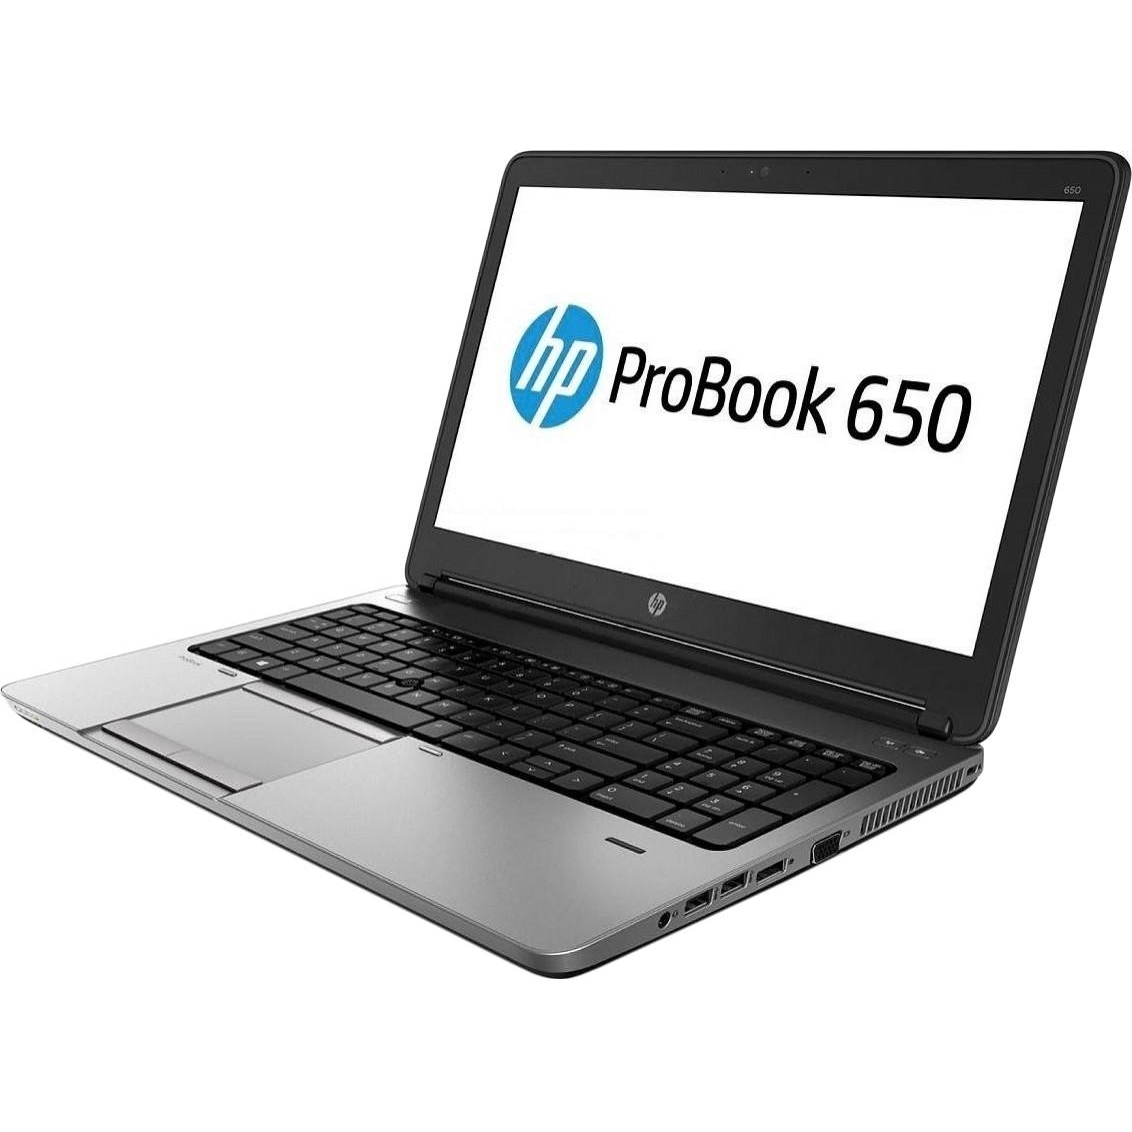 HP ProBook 650 G1 (H5G79EA) - зображення 1